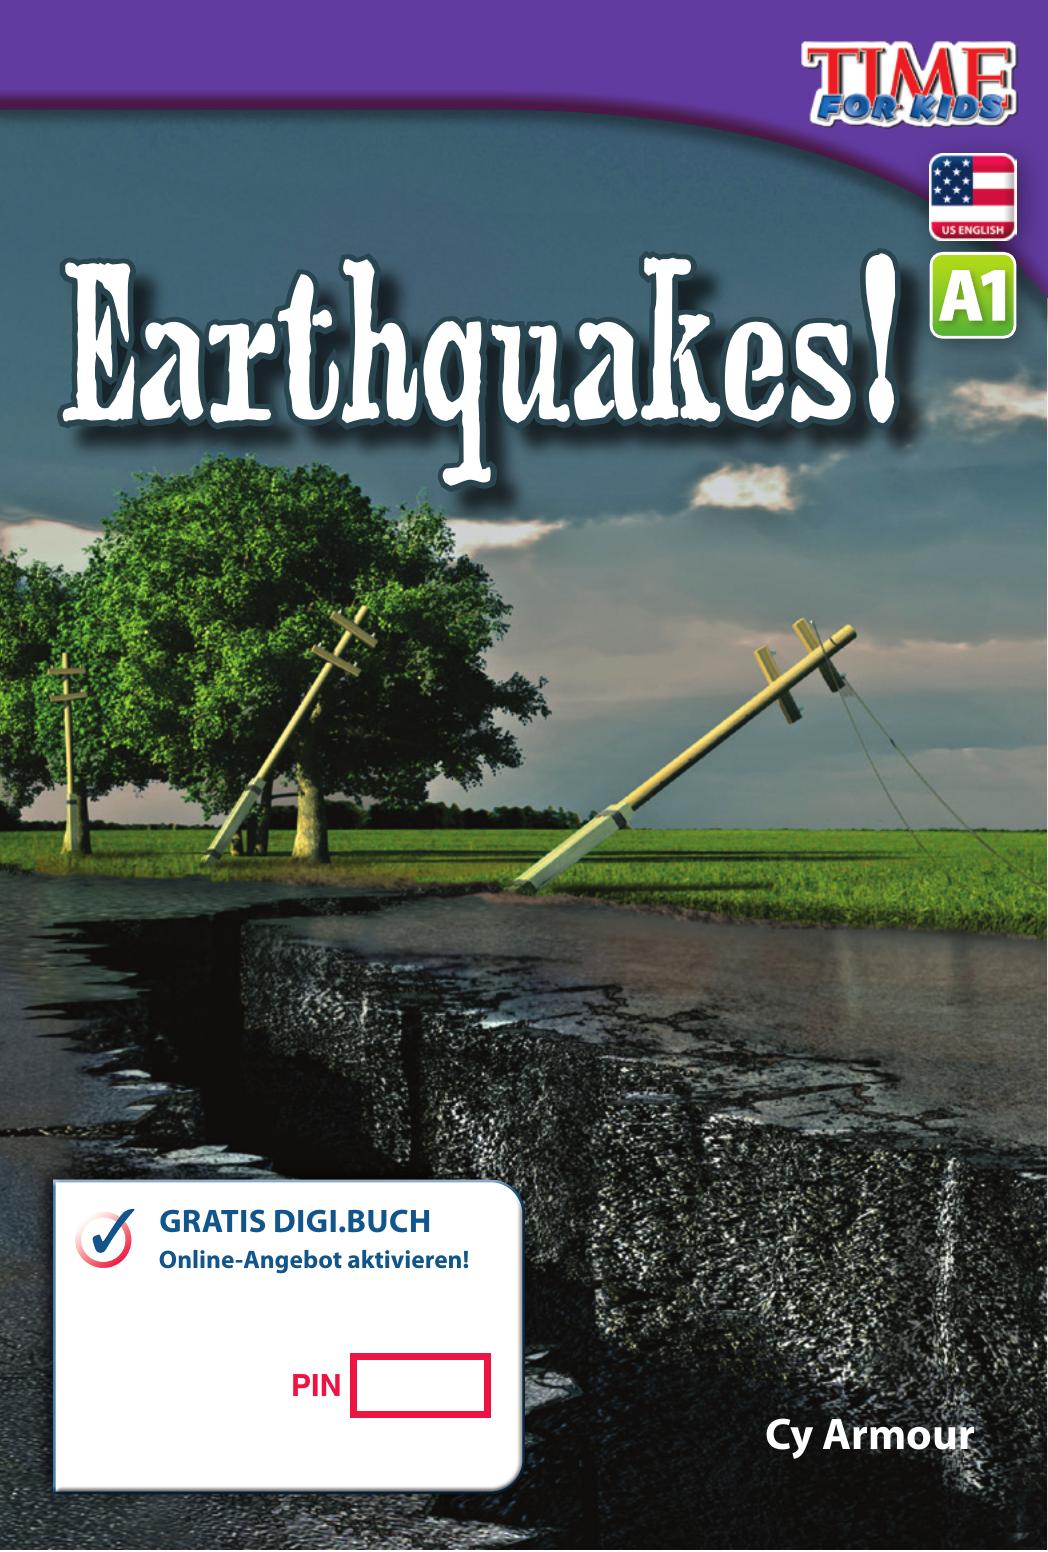 A1 – Earthquakes!